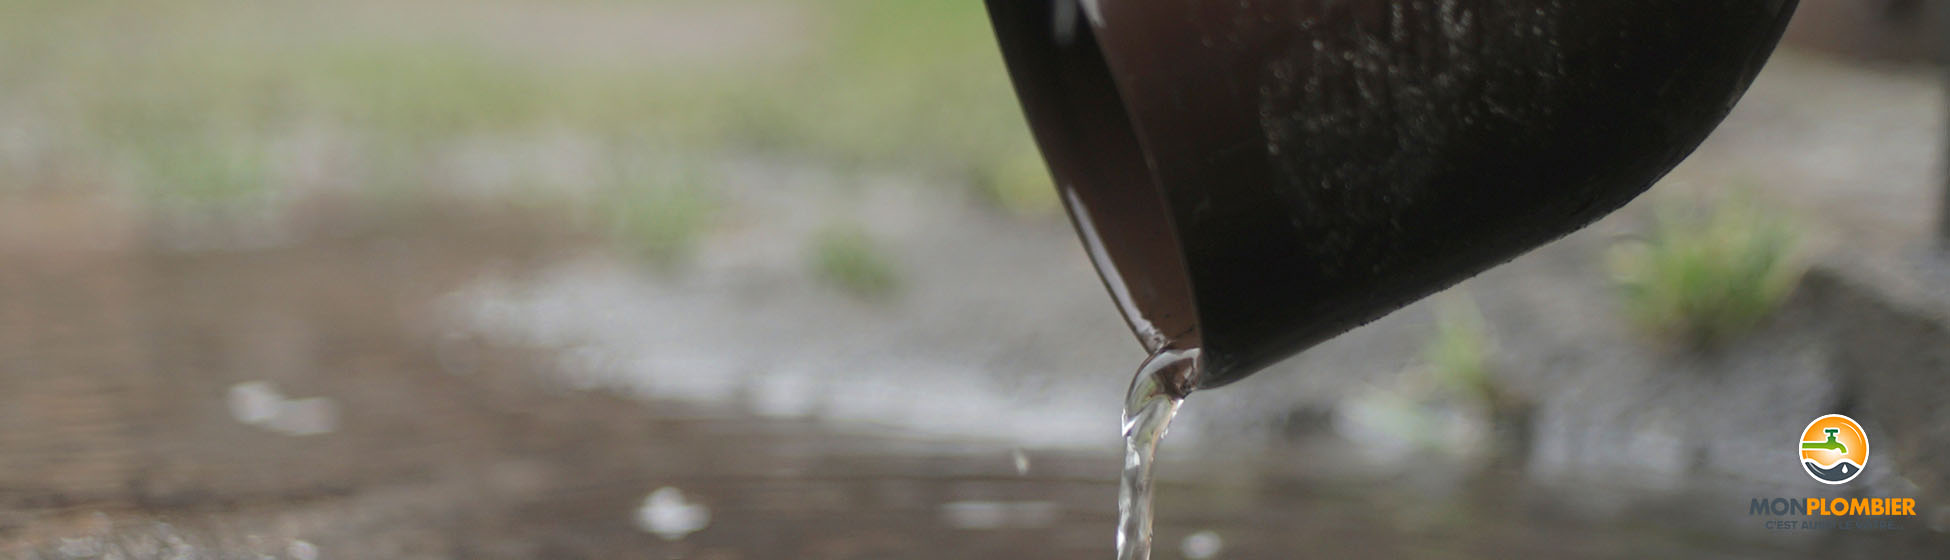 Installation pompe récupération eau de pluie